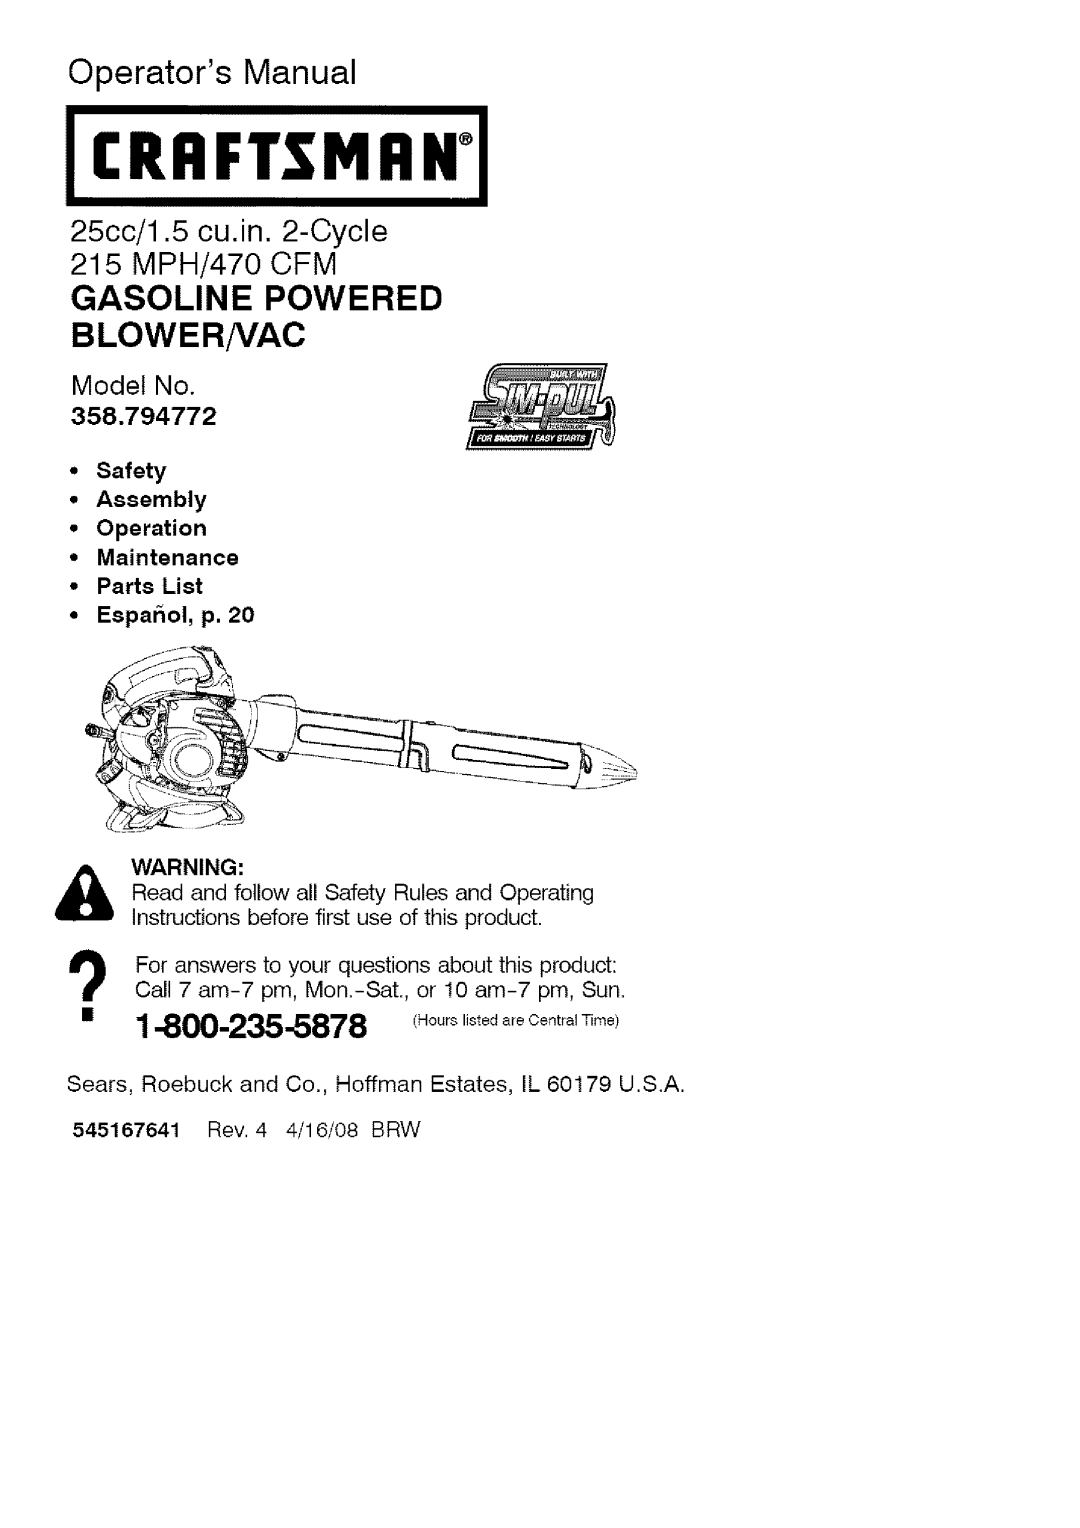 Craftsman 358.794772 manual Blower/Vac, Model No, Craftsmr, Operators Manual, 25cc/1.5 cu.in. 2-Cycle215 MPH/470 CFM 